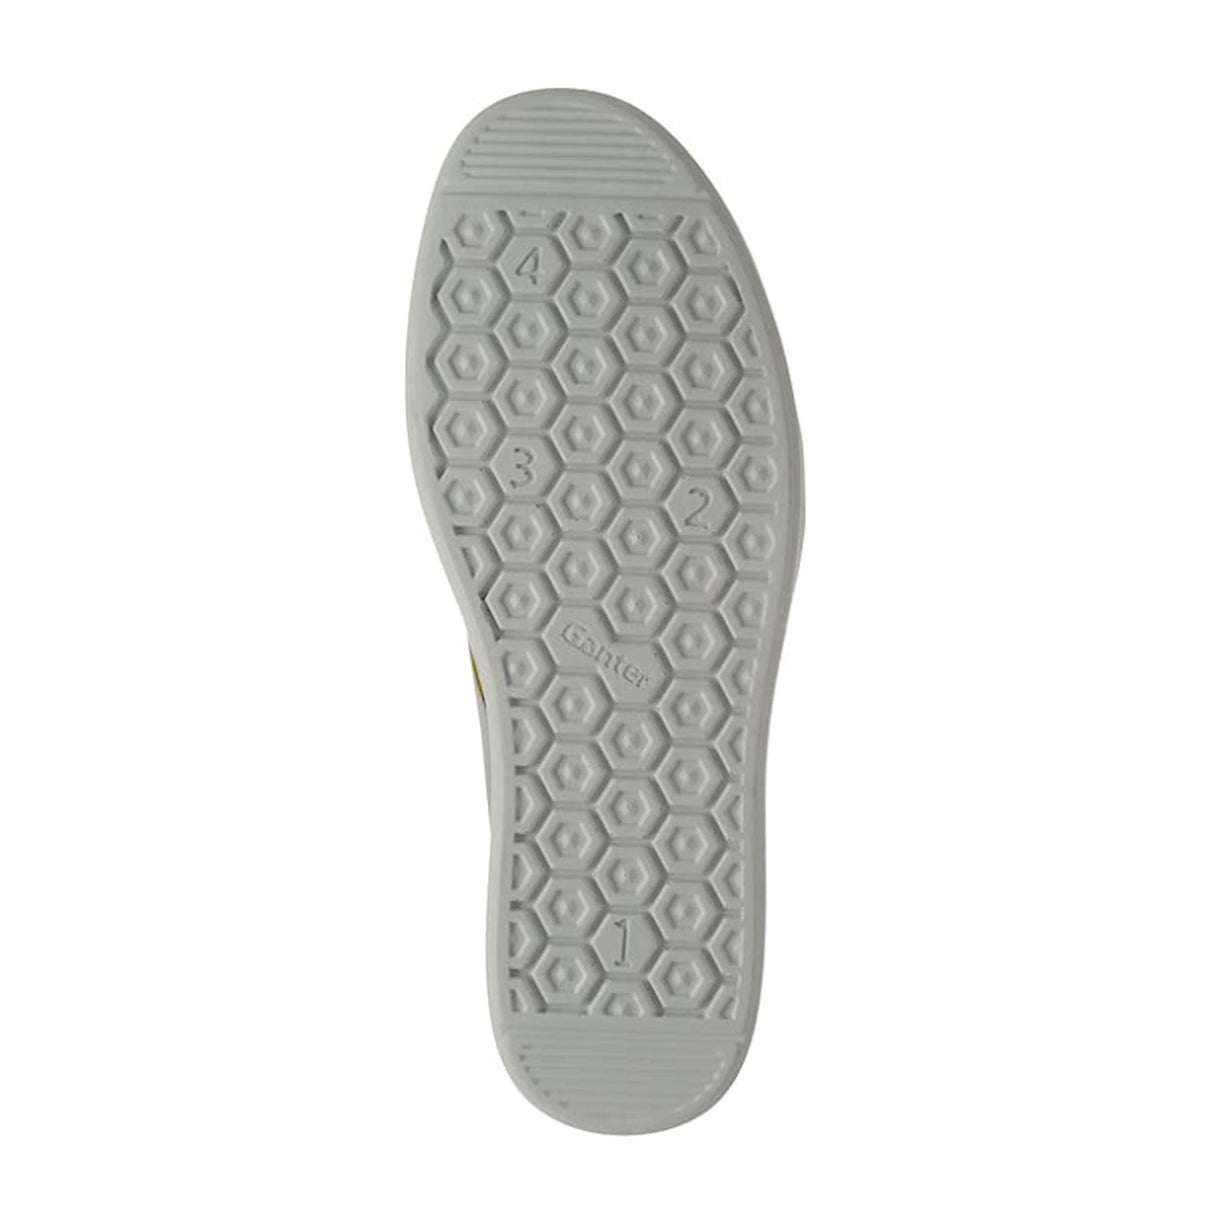 Ganter Heidi 5 Slip On Sneaker (Women) - Limone/Grey Dress-Casual - Sneakers - The Heel Shoe Fitters